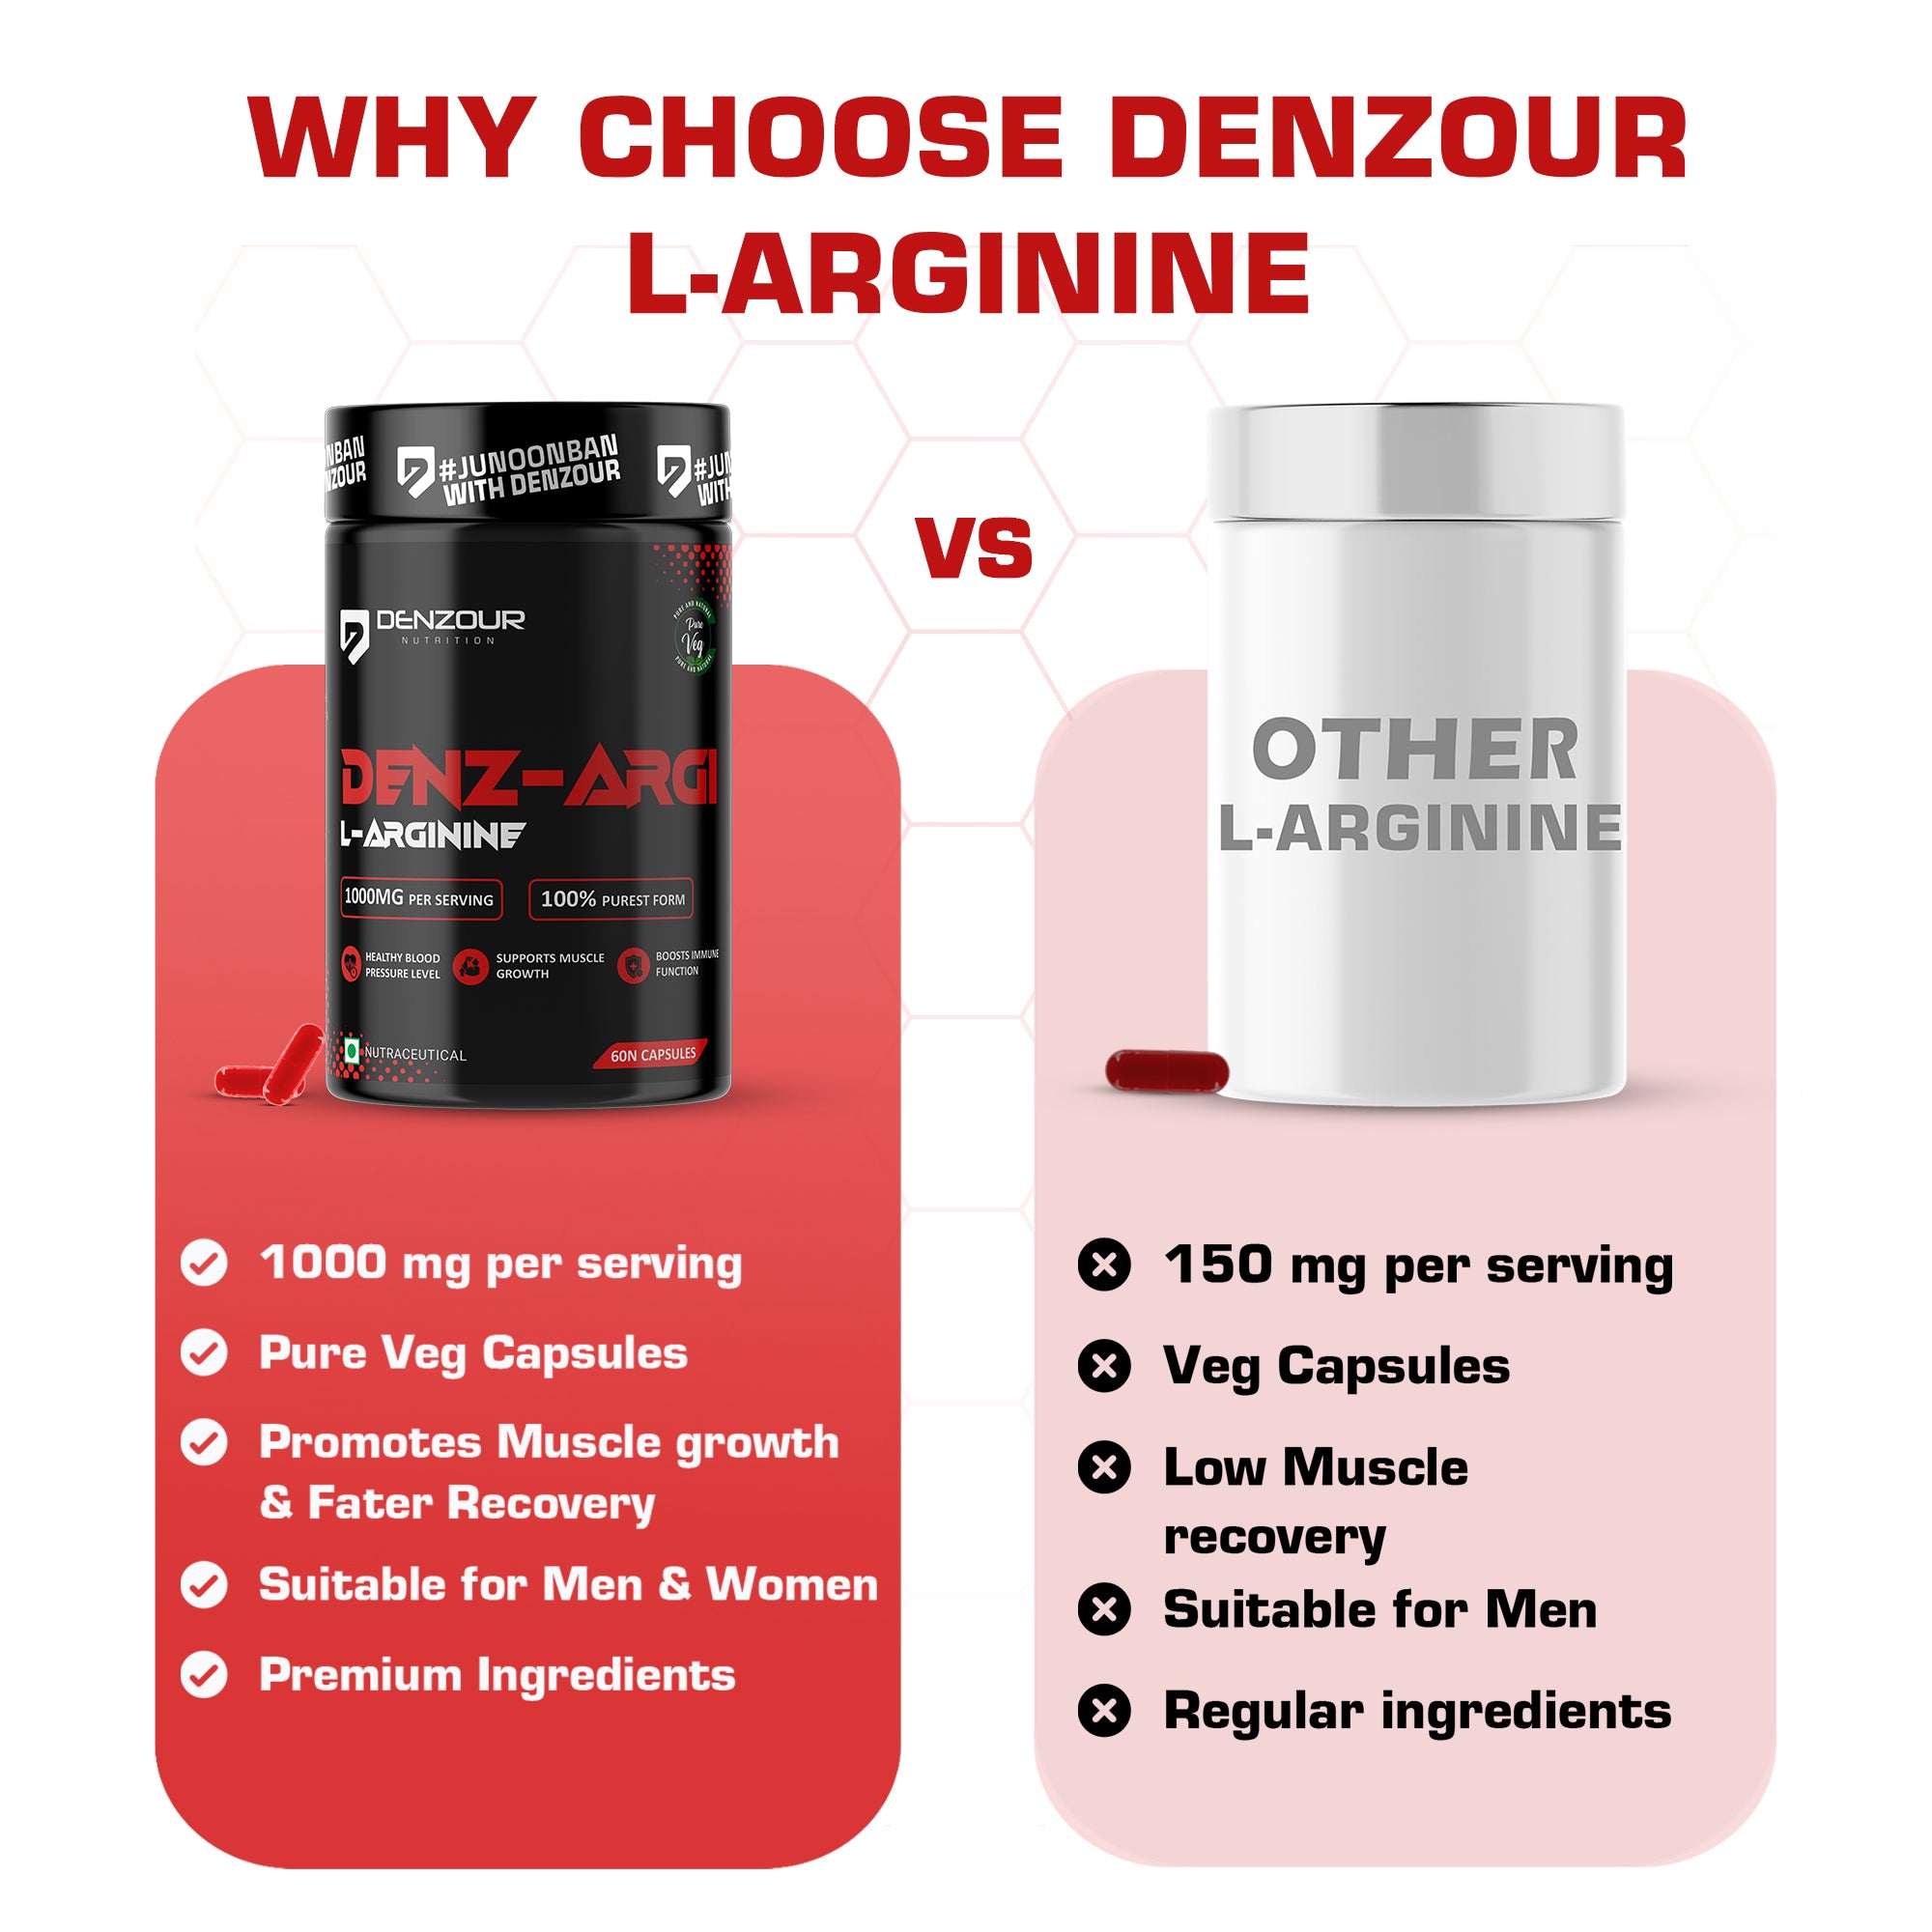 Denz-Argi L-Arginine - 60 Capsules